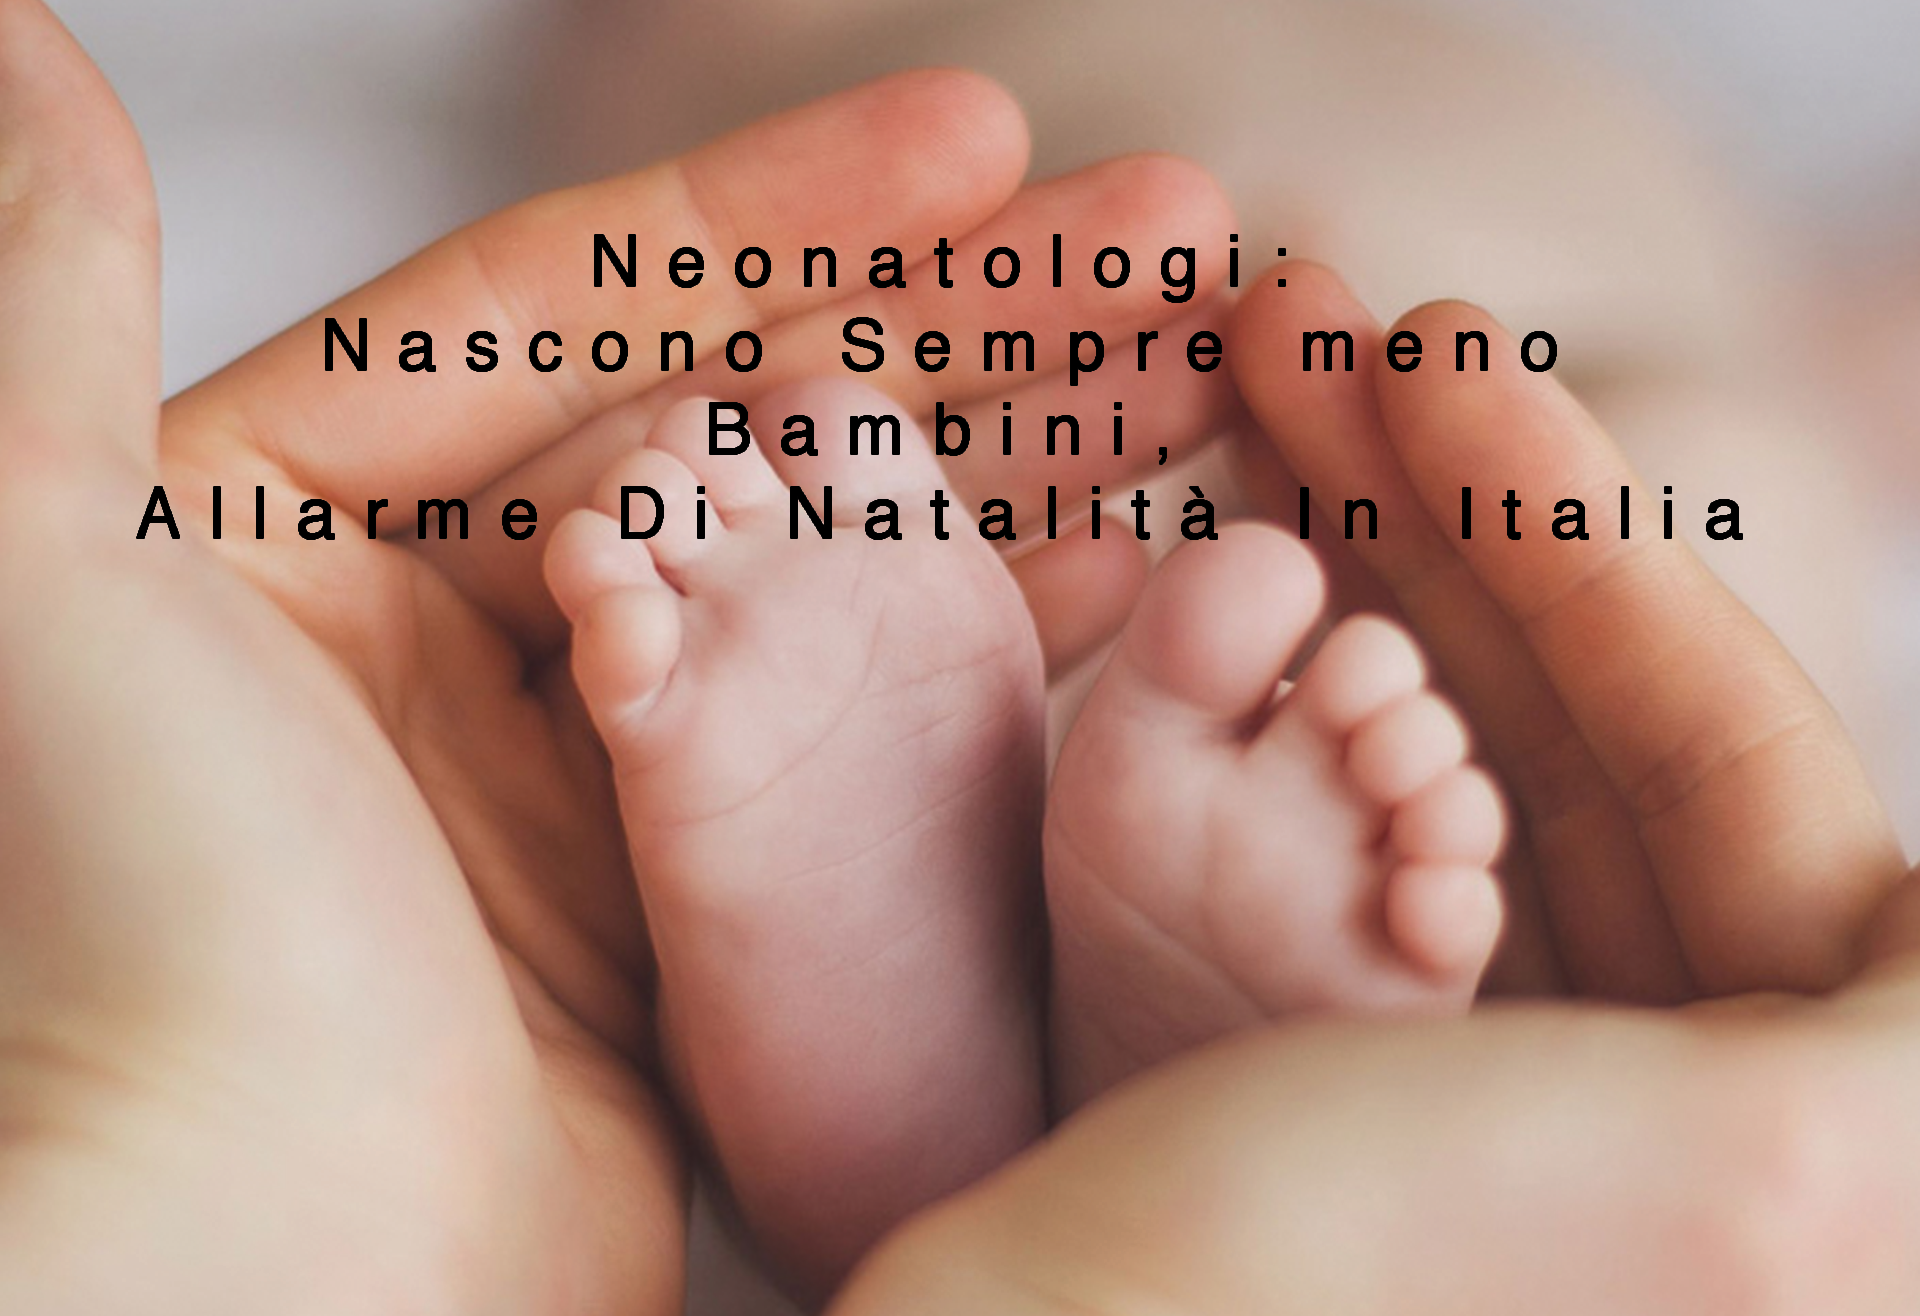 Neonatologi: Nascono Sempre meno Bambini, Allarme Di Natalità In Itali